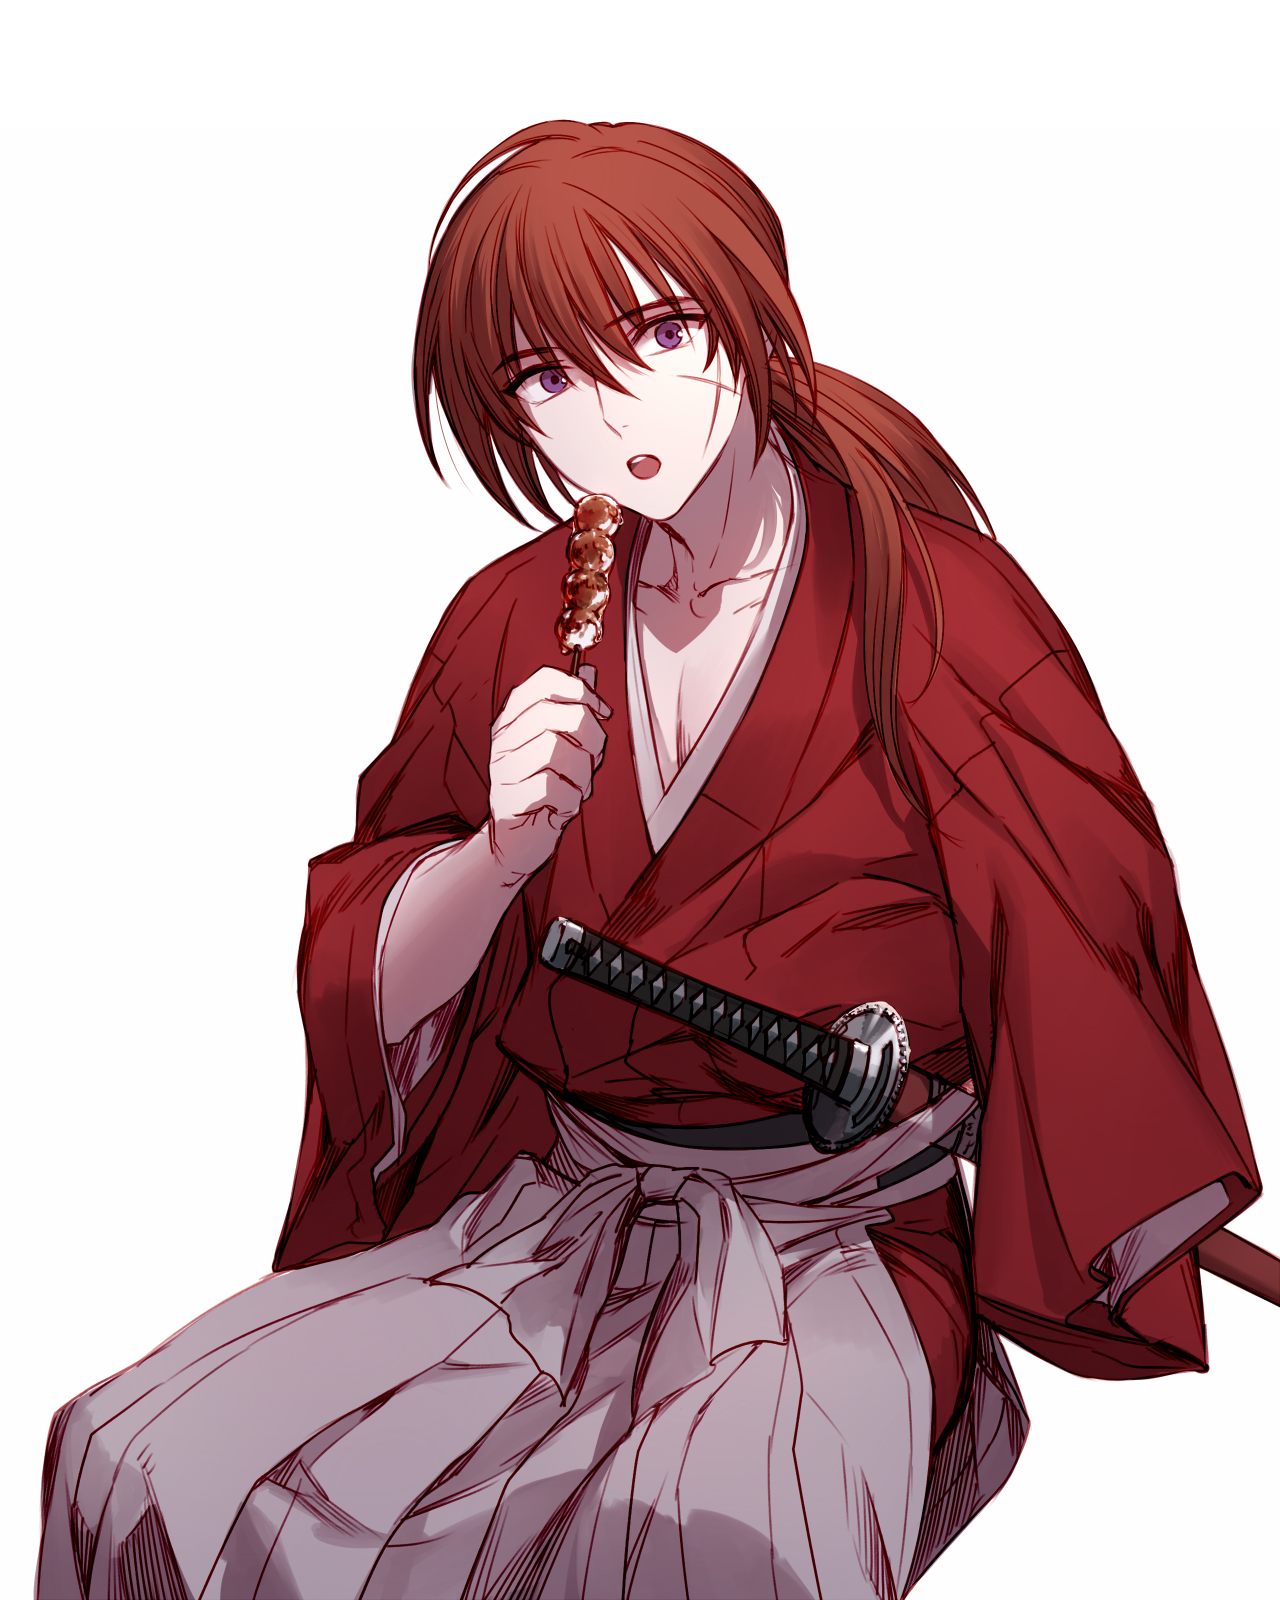 Himura Kenshin Rurouni Kenshin Drawn By Kazari Tayu Danbooru